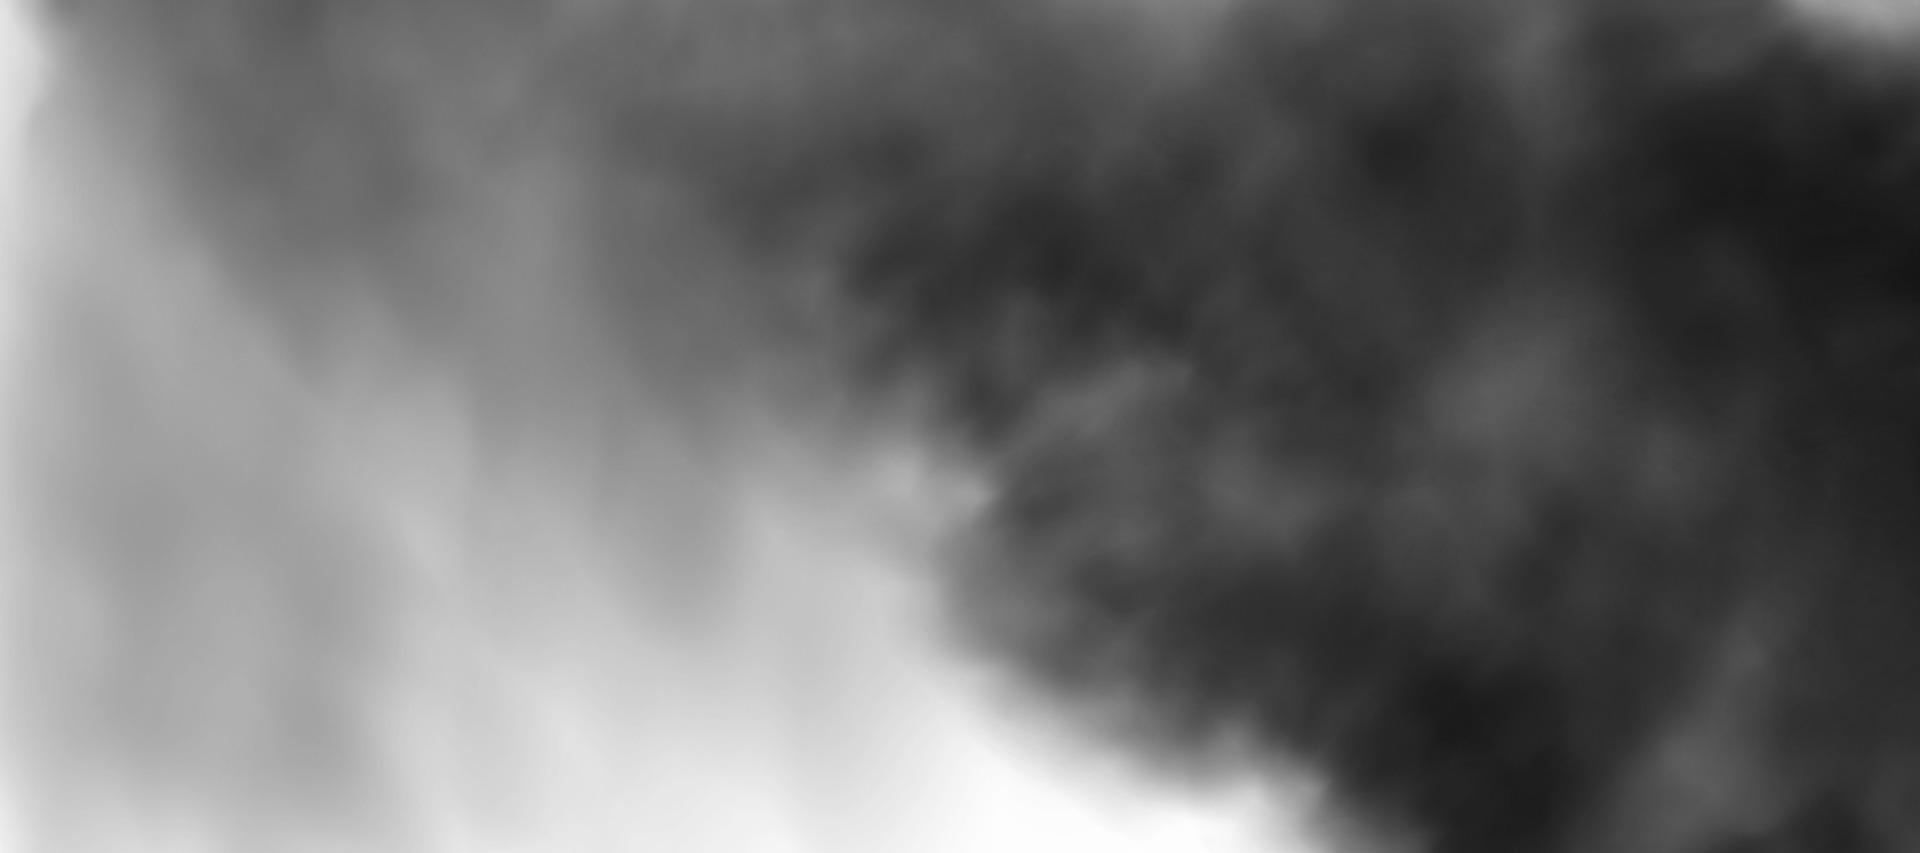 nuvem de poeira com sujeira, fumaça de cigarro, poluição atmosférica, partículas de solo e areia. vetor realista isolado em fundo transparente.